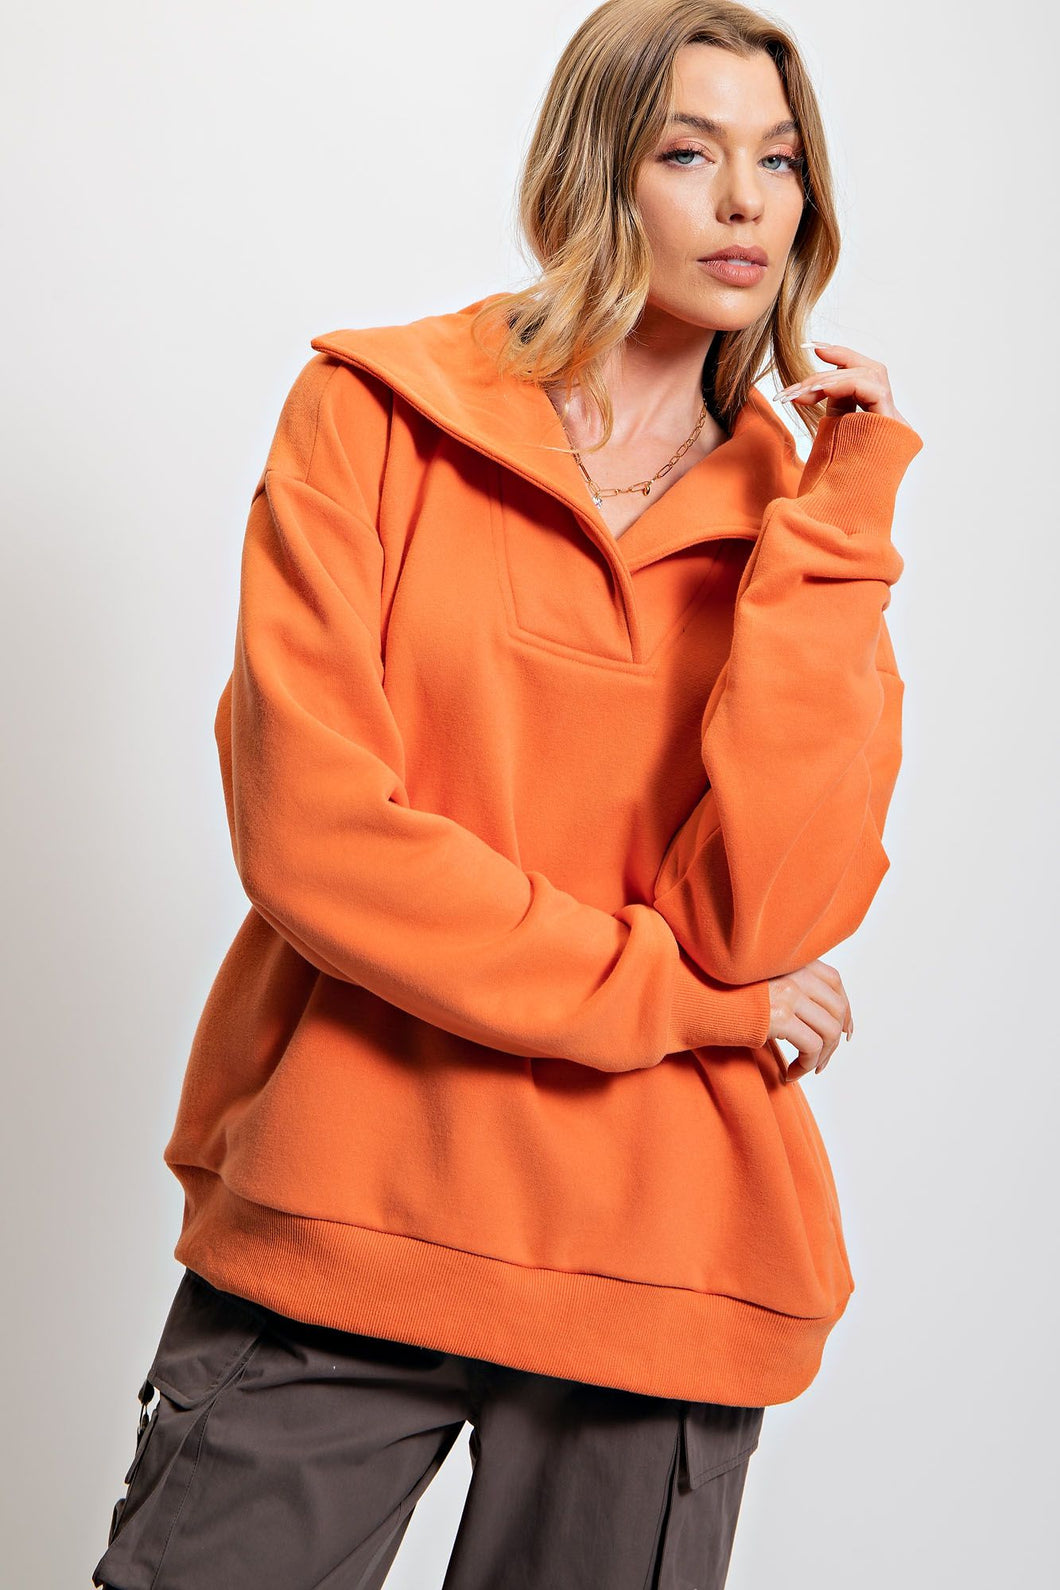 Bethany Orange Sweater